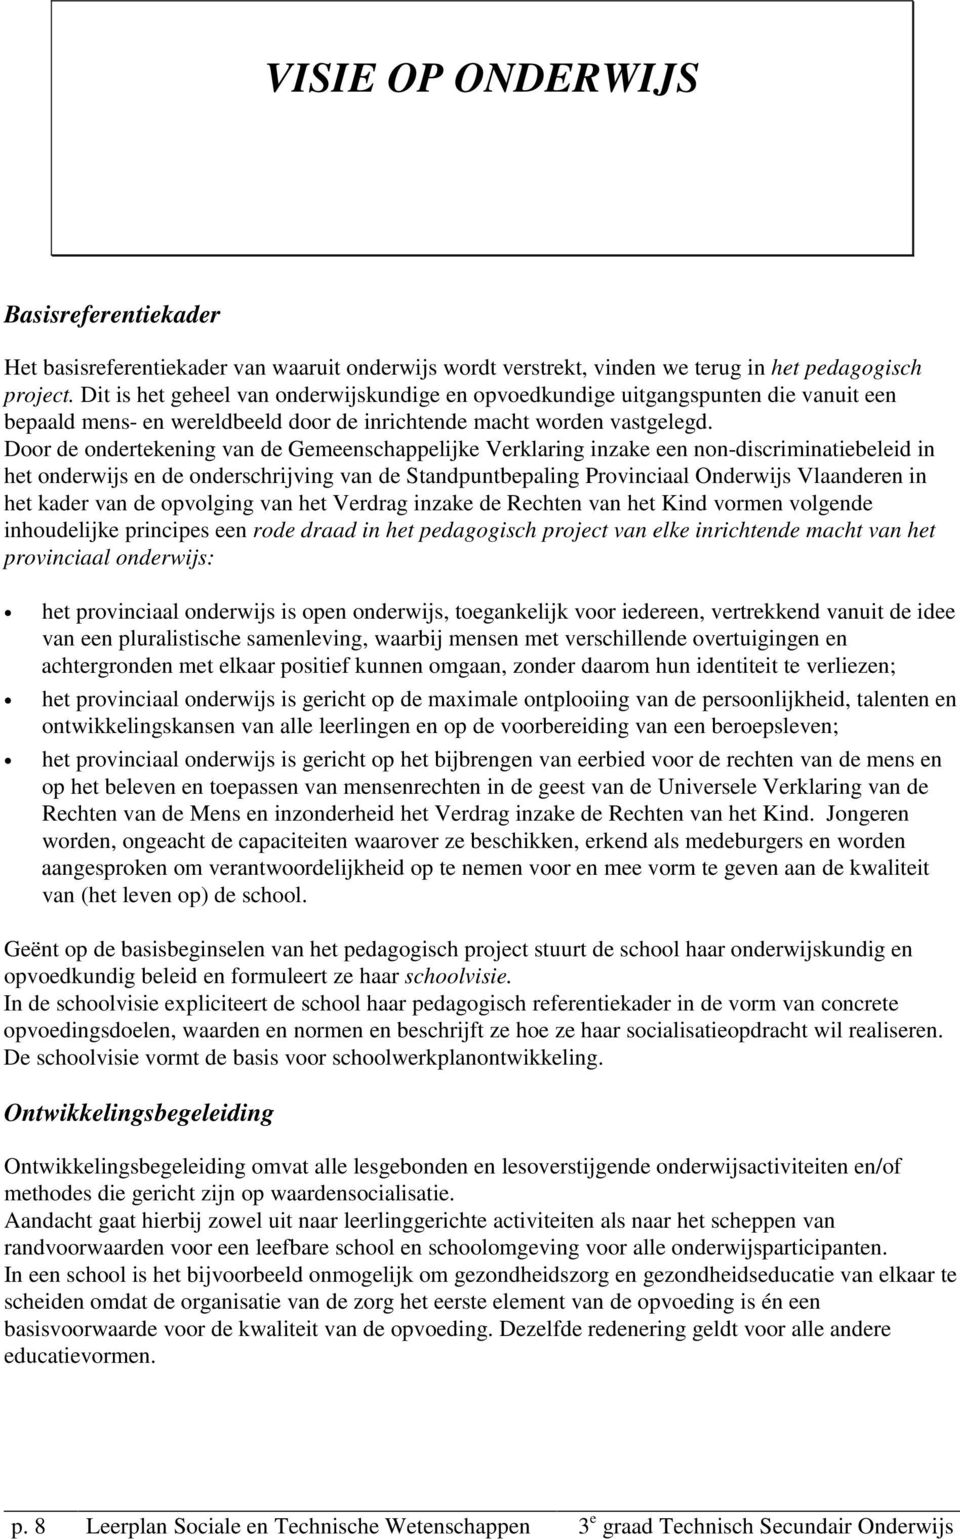 Door de ondertekening van de Gemeenschappelijke Verklaring inzake een non-discriminatiebeleid in het onderwijs en de onderschrijving van de Standpuntbepaling Provinciaal Onderwijs Vlaanderen in het